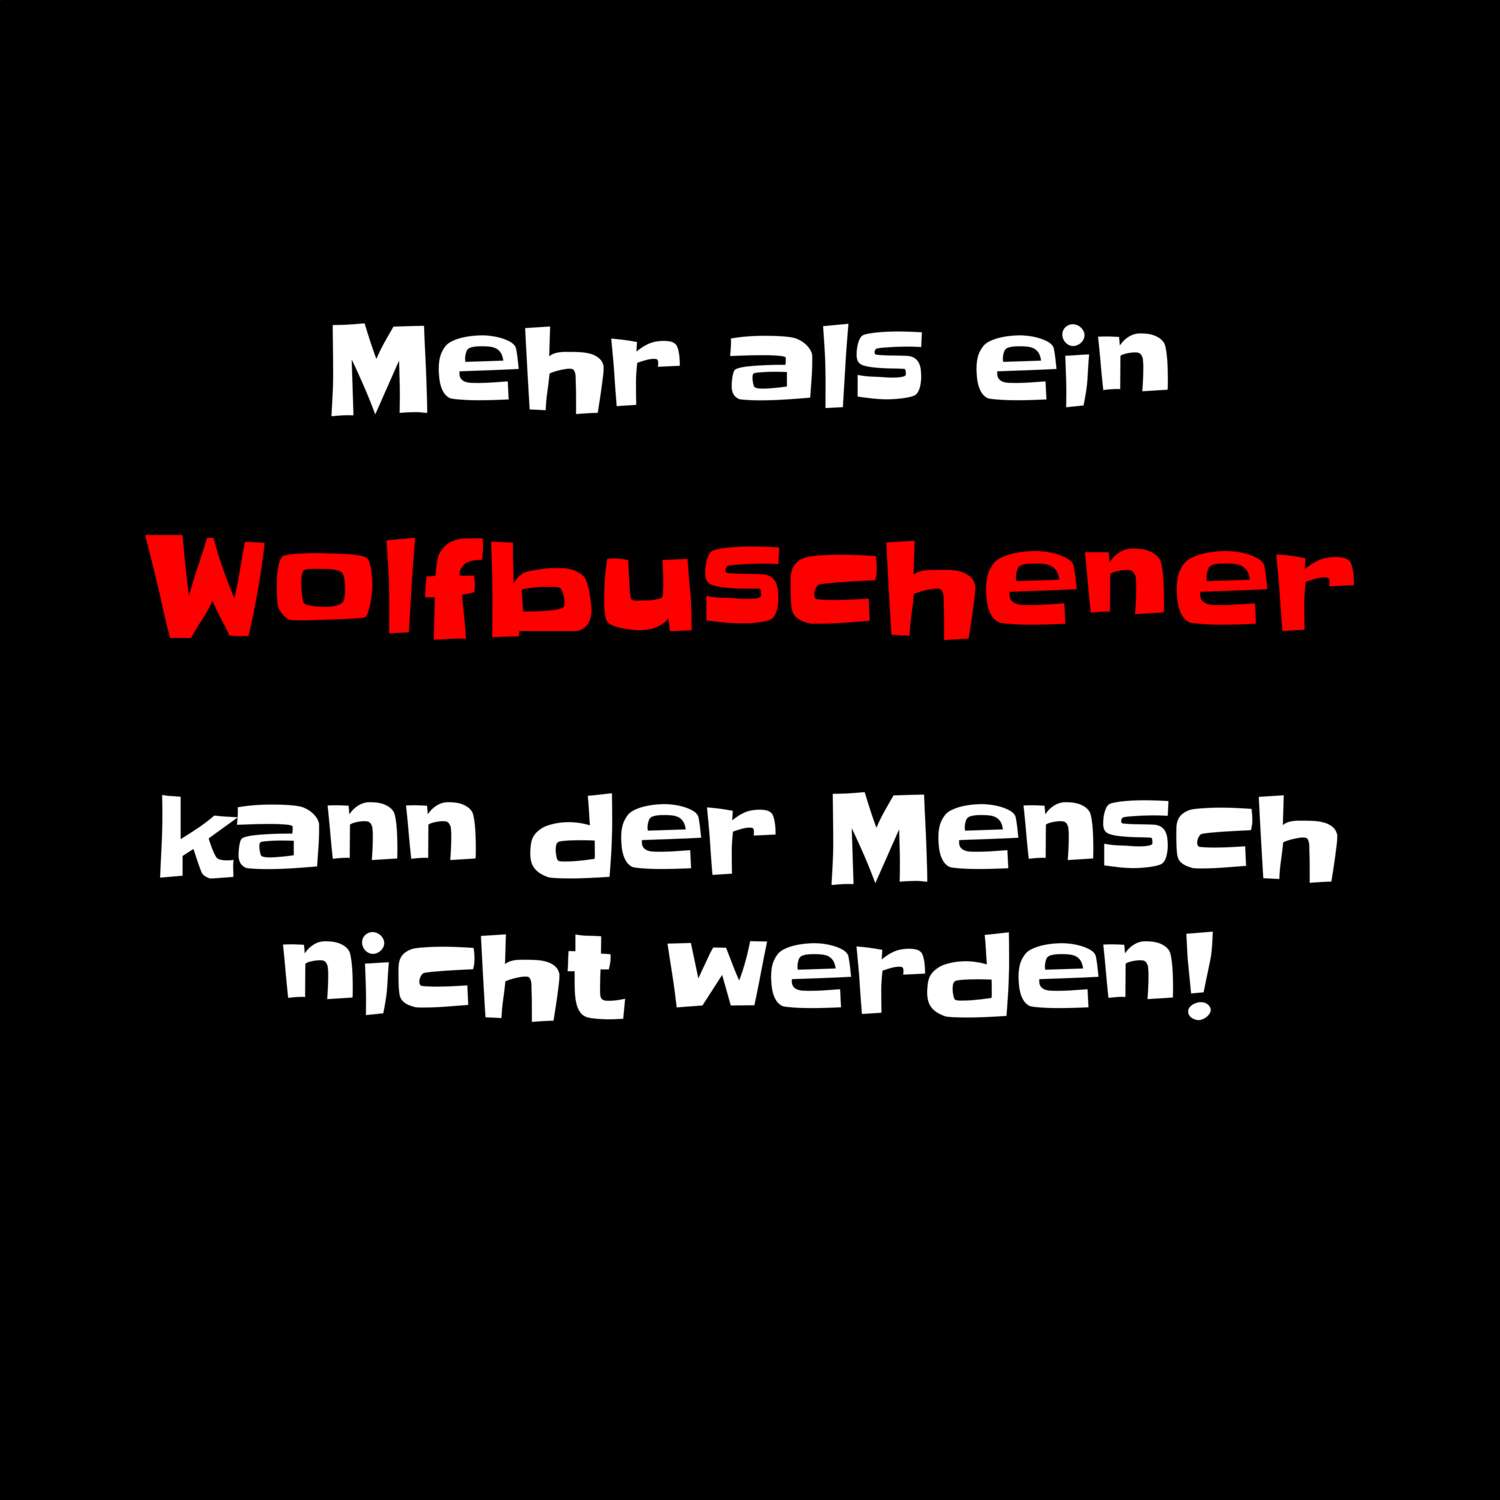 Wolfbusch T-Shirt »Mehr als ein«